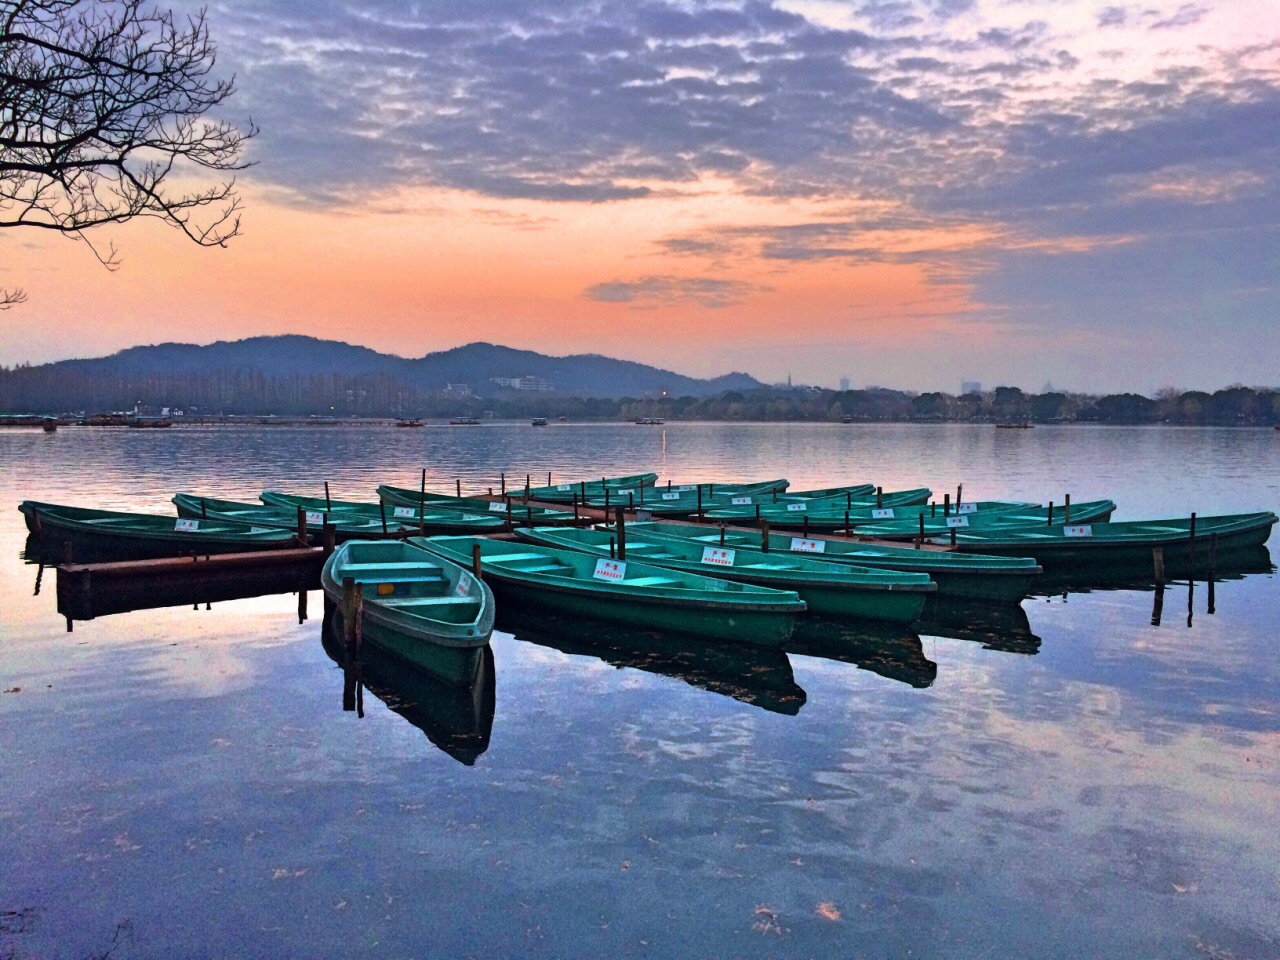 【携程攻略】杭州杨公堤景点,这条线汇聚了西湖最多的美景,曲院风荷